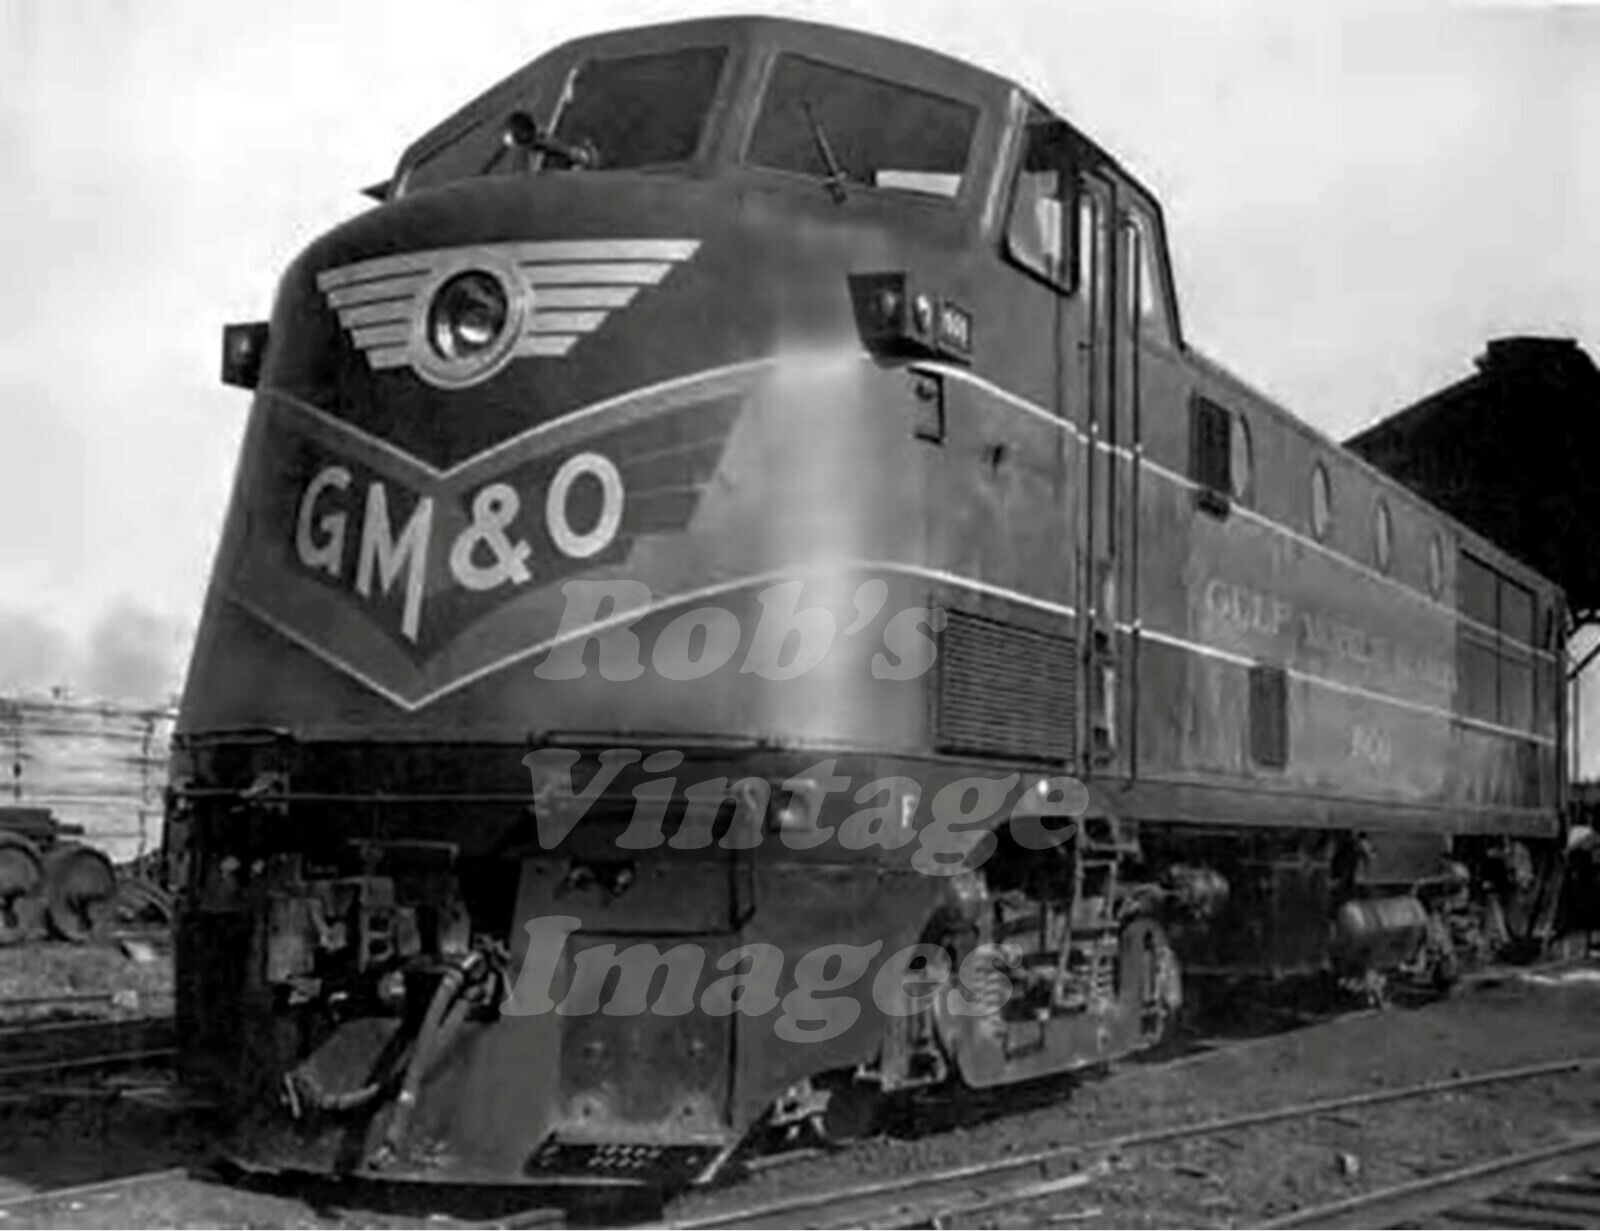  GMO Railroad  photo Ingalls 4-S Locomotive Gulf Mobile Ohio Railroad train 